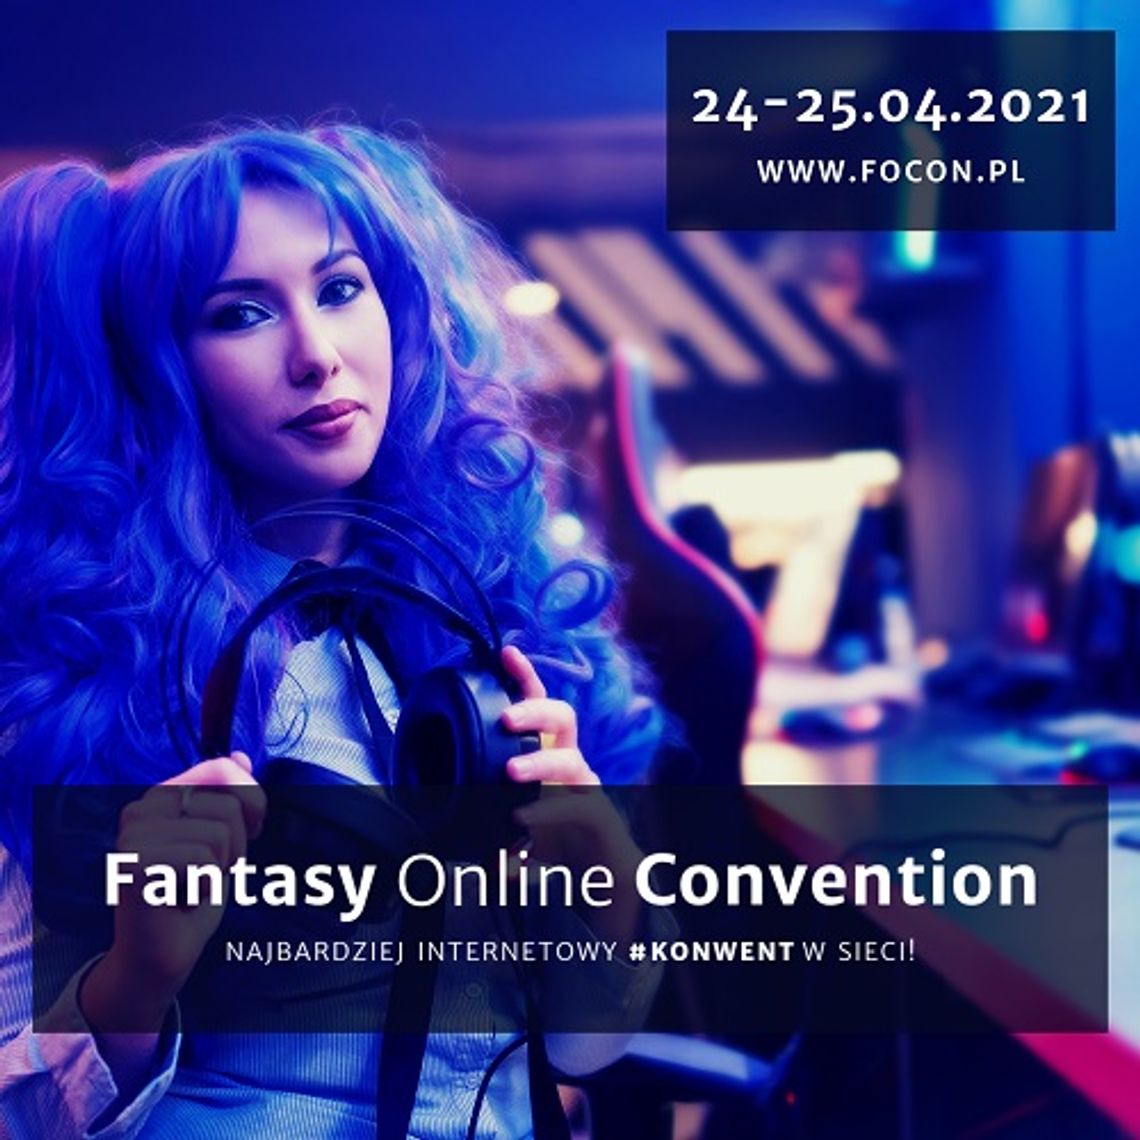 Focon czyli Fantasy Online Convention - Najbardziej Internetowy #Konwent w sieci!